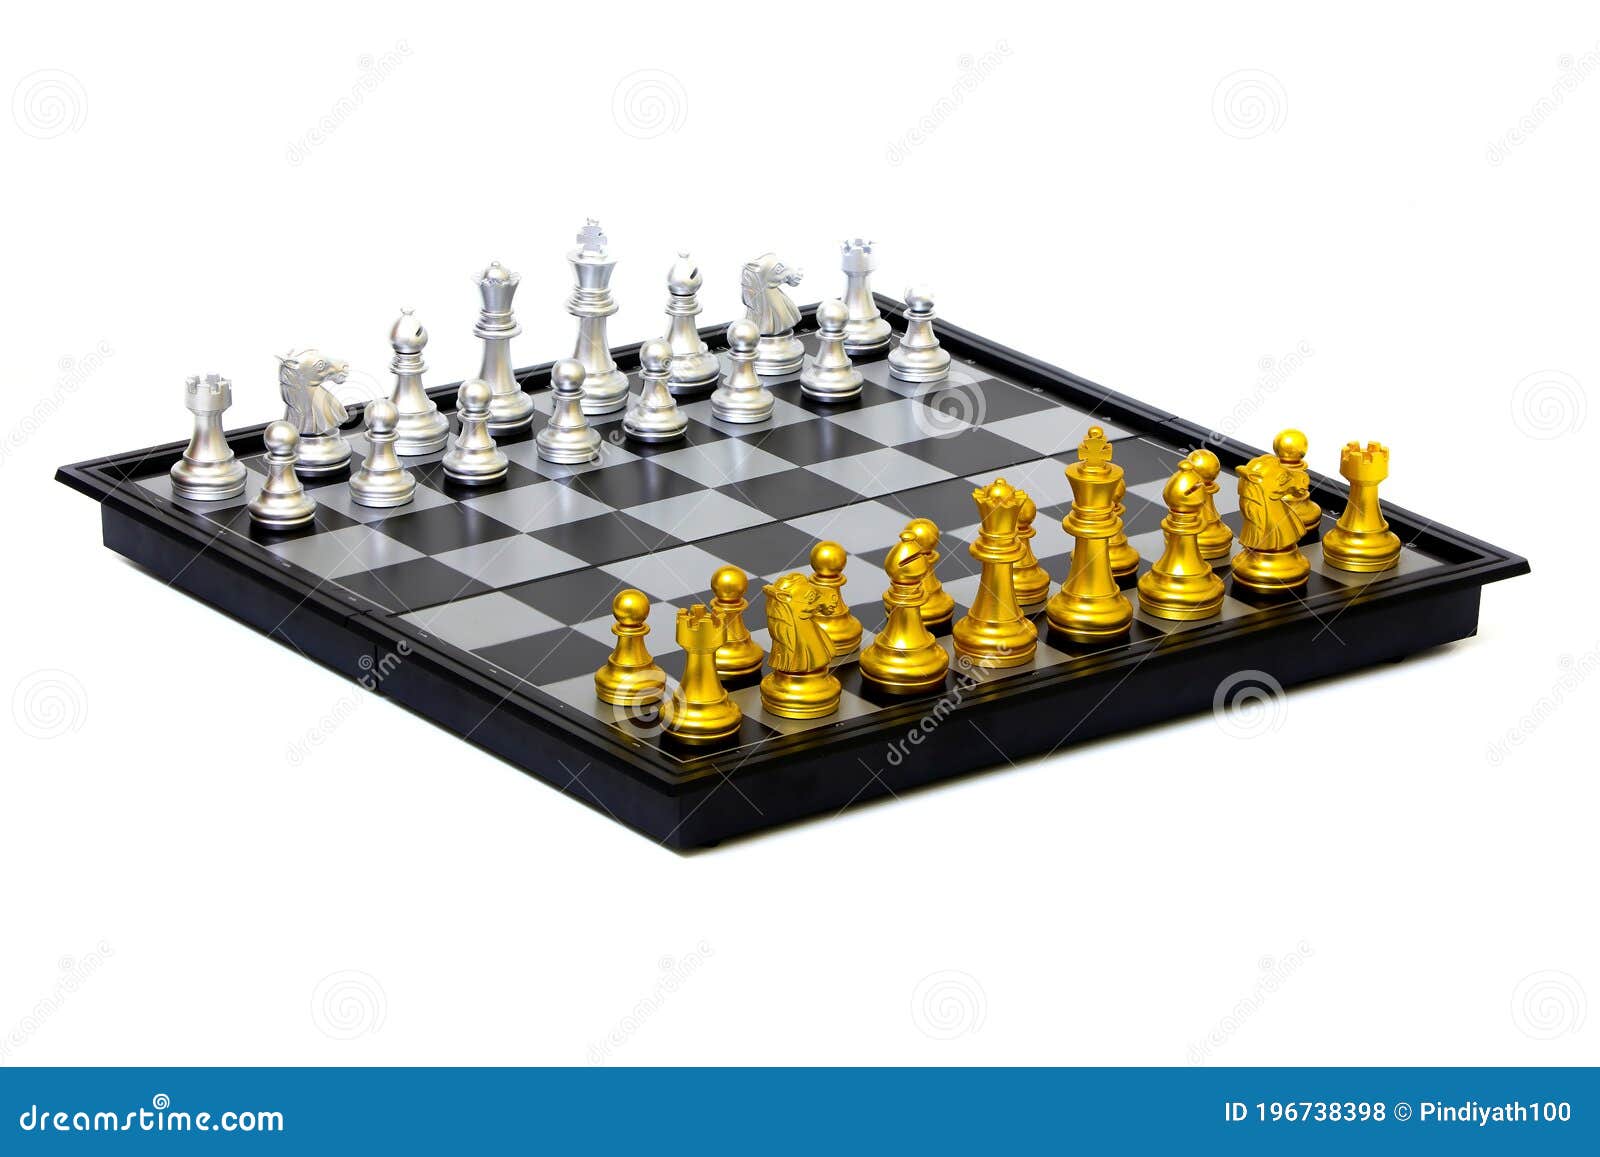 Chess Set On White Background Stock Photo - Image Of Challenge,  Intelligence: 196738398